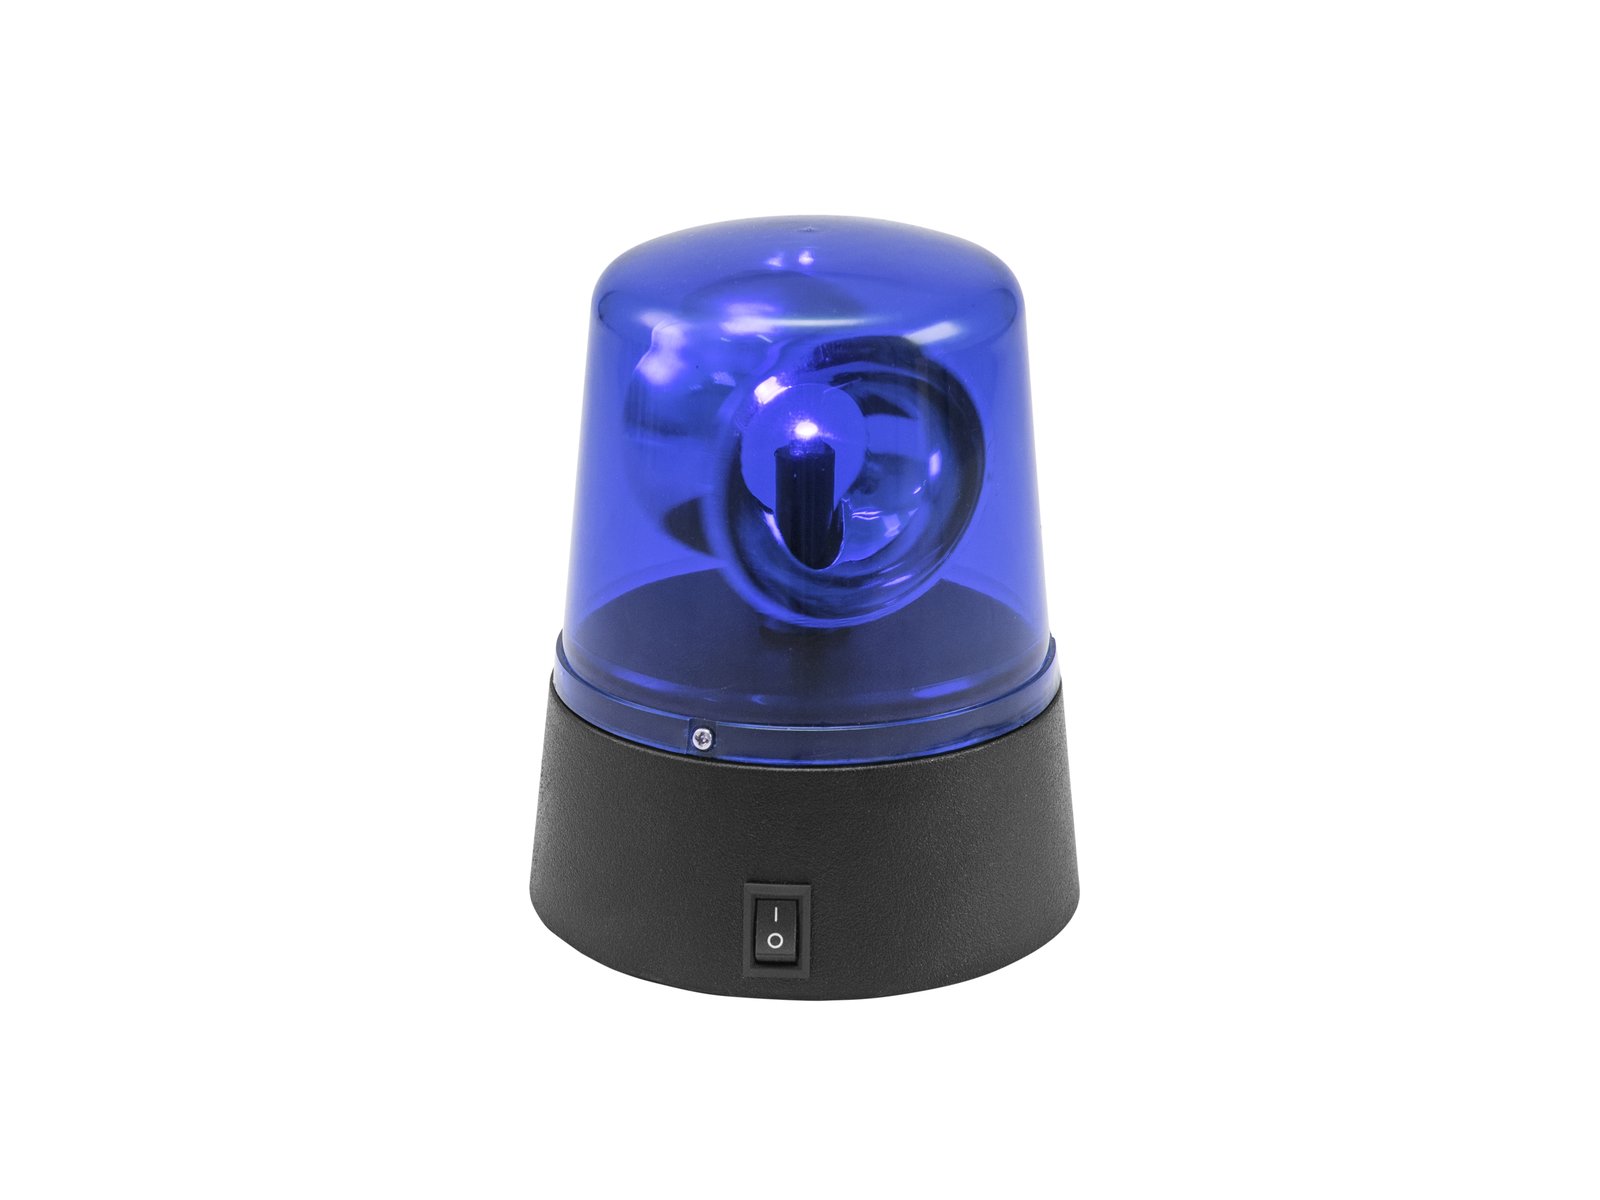 EUROLITE LED Mini-Polizeilicht blau USB/Batterie